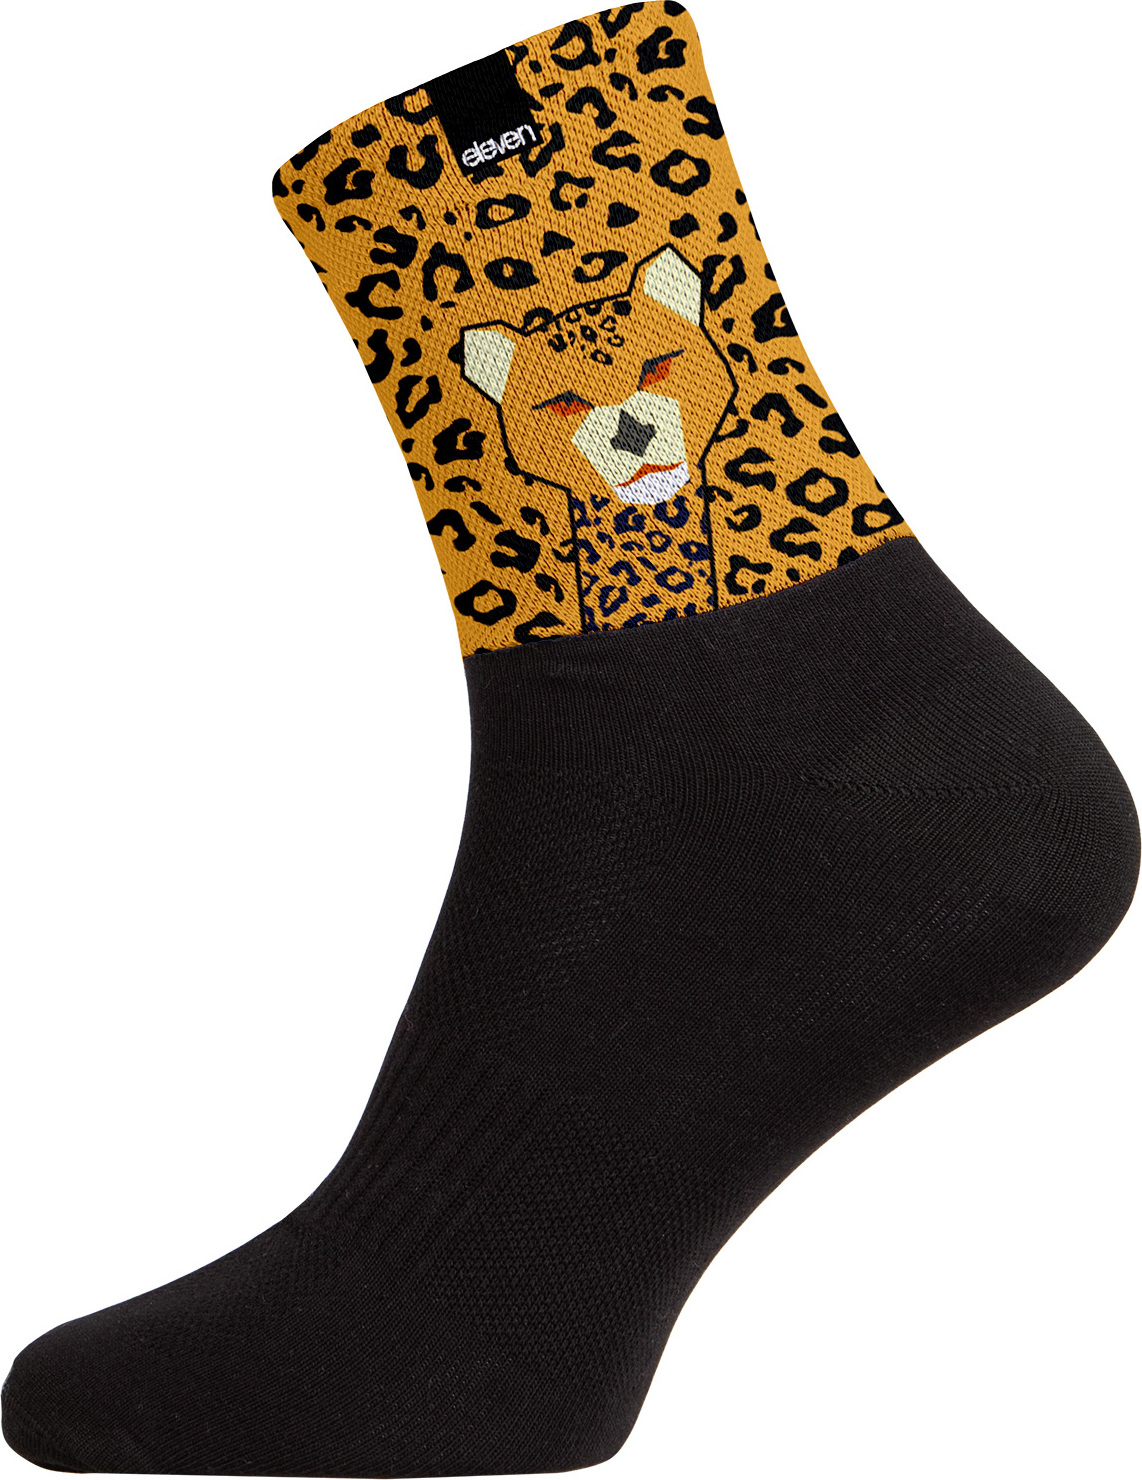 Ponožky ELEVEN Cuba Cheetah černé Velikost: M (39-41)